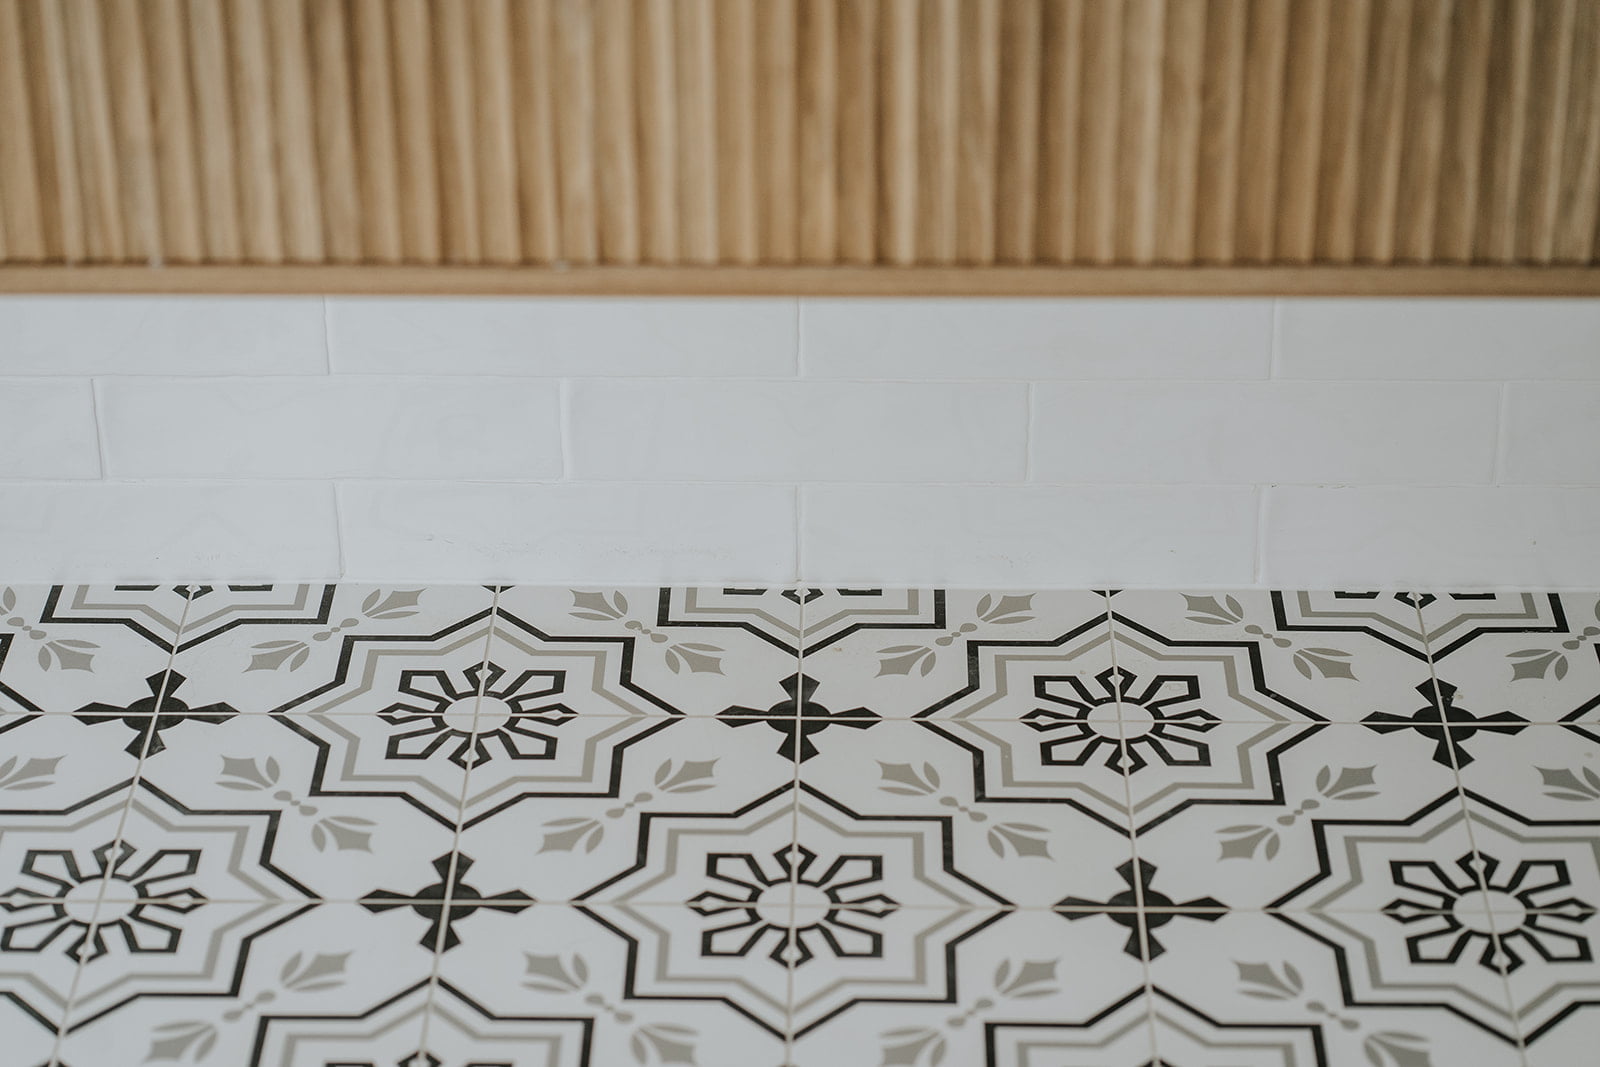 Timber vanity and encaustic floor tiles